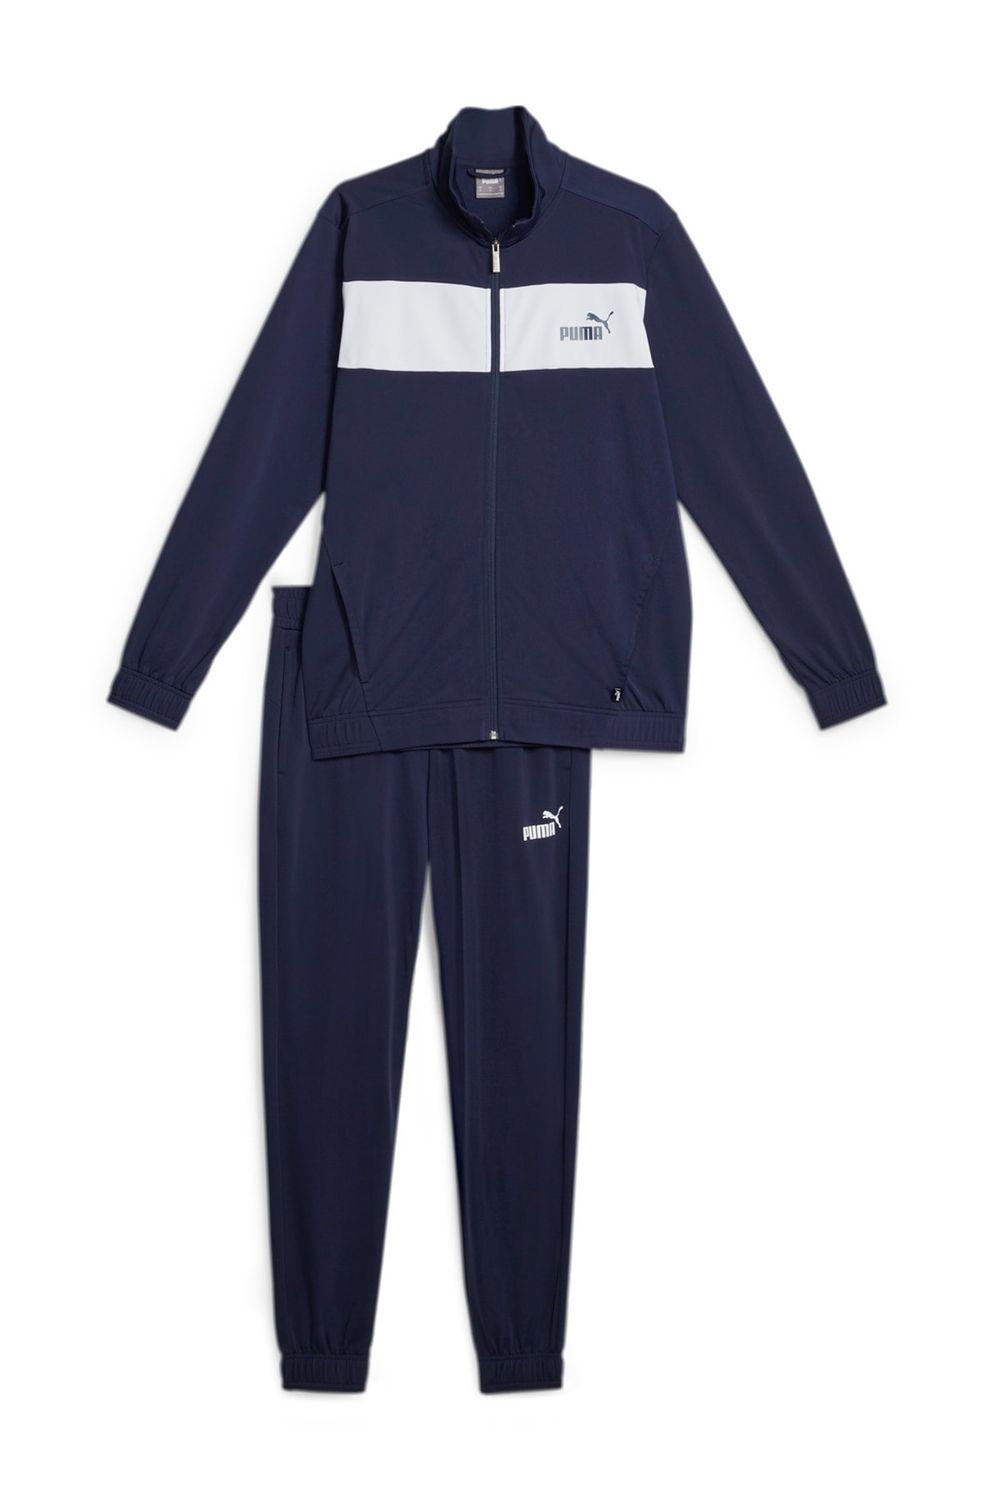 Puma Men's Clean Sweat Suit CL/Tracksuit Jogging Suit Sports Suit